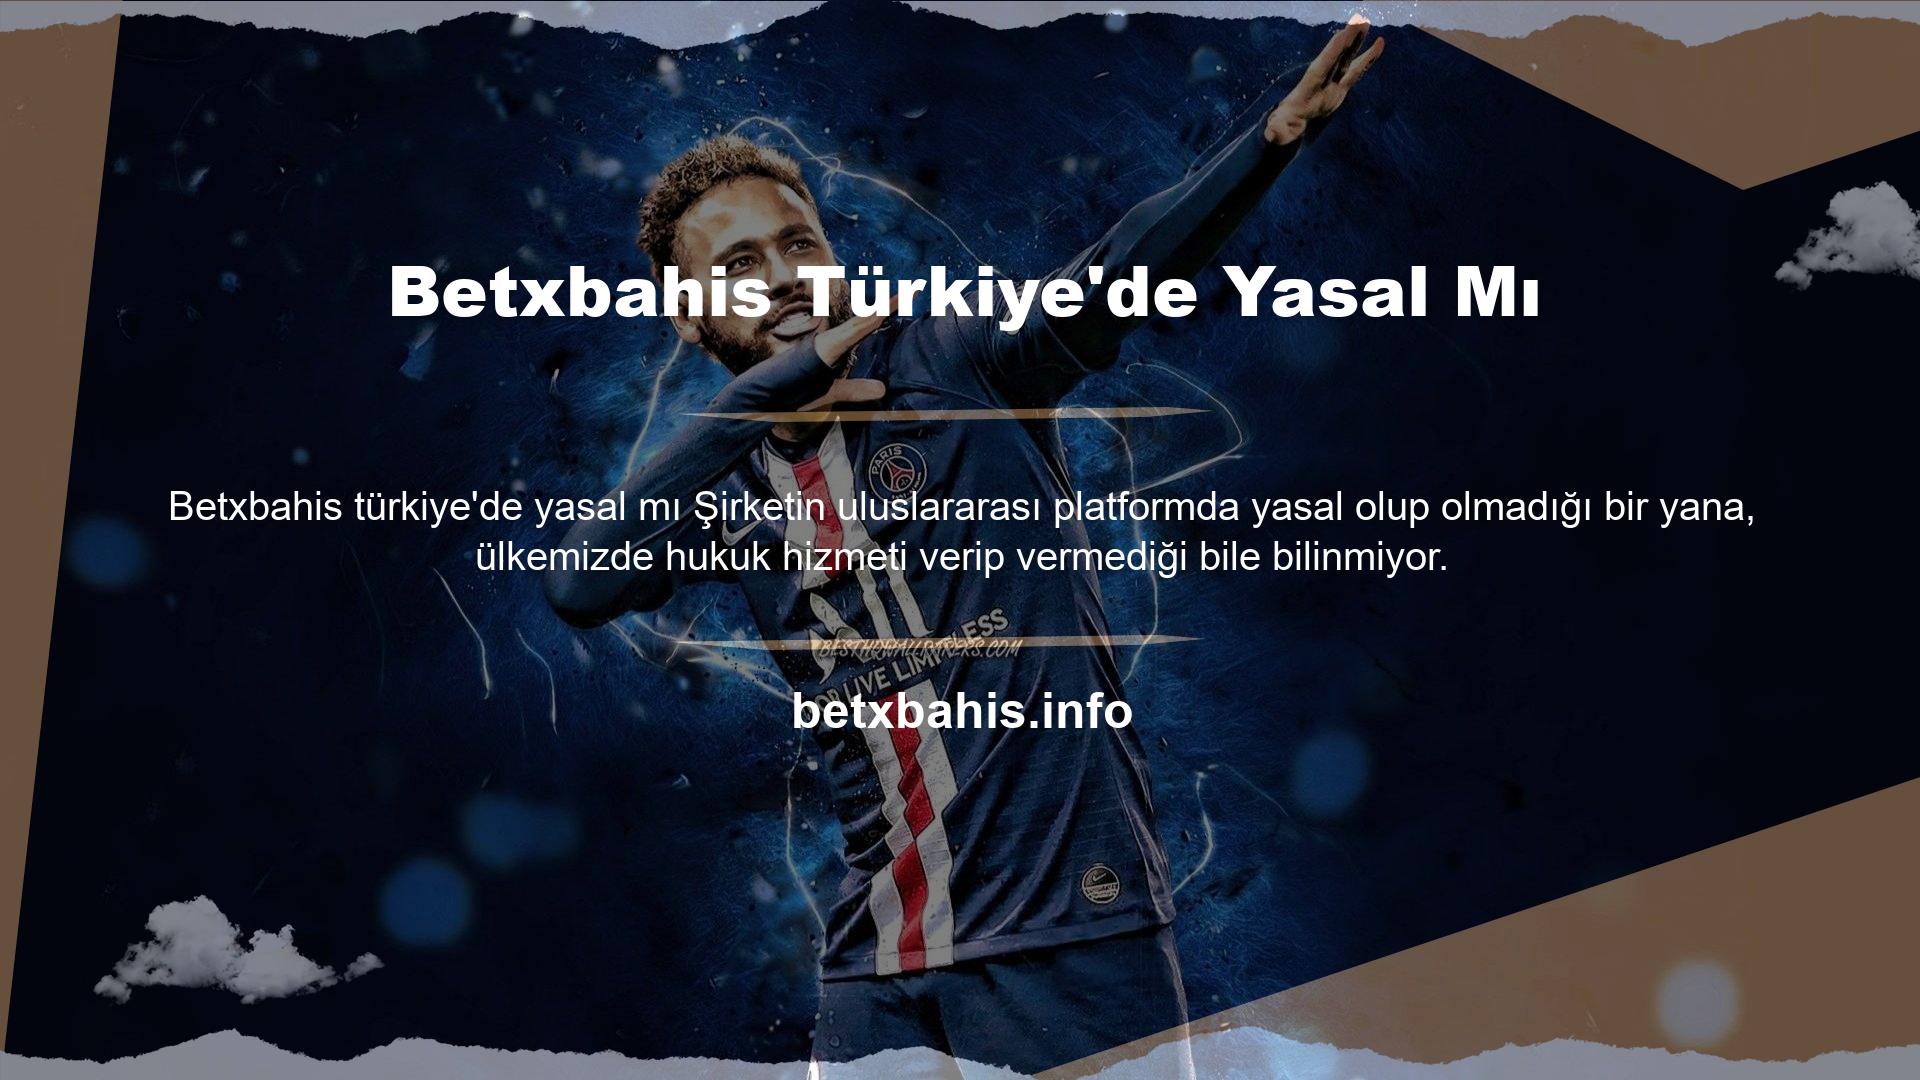 Peki Betxbahis oyun yatırımcıları Türkiye'de yasal mı? Her zaman çok fazla soru sorar